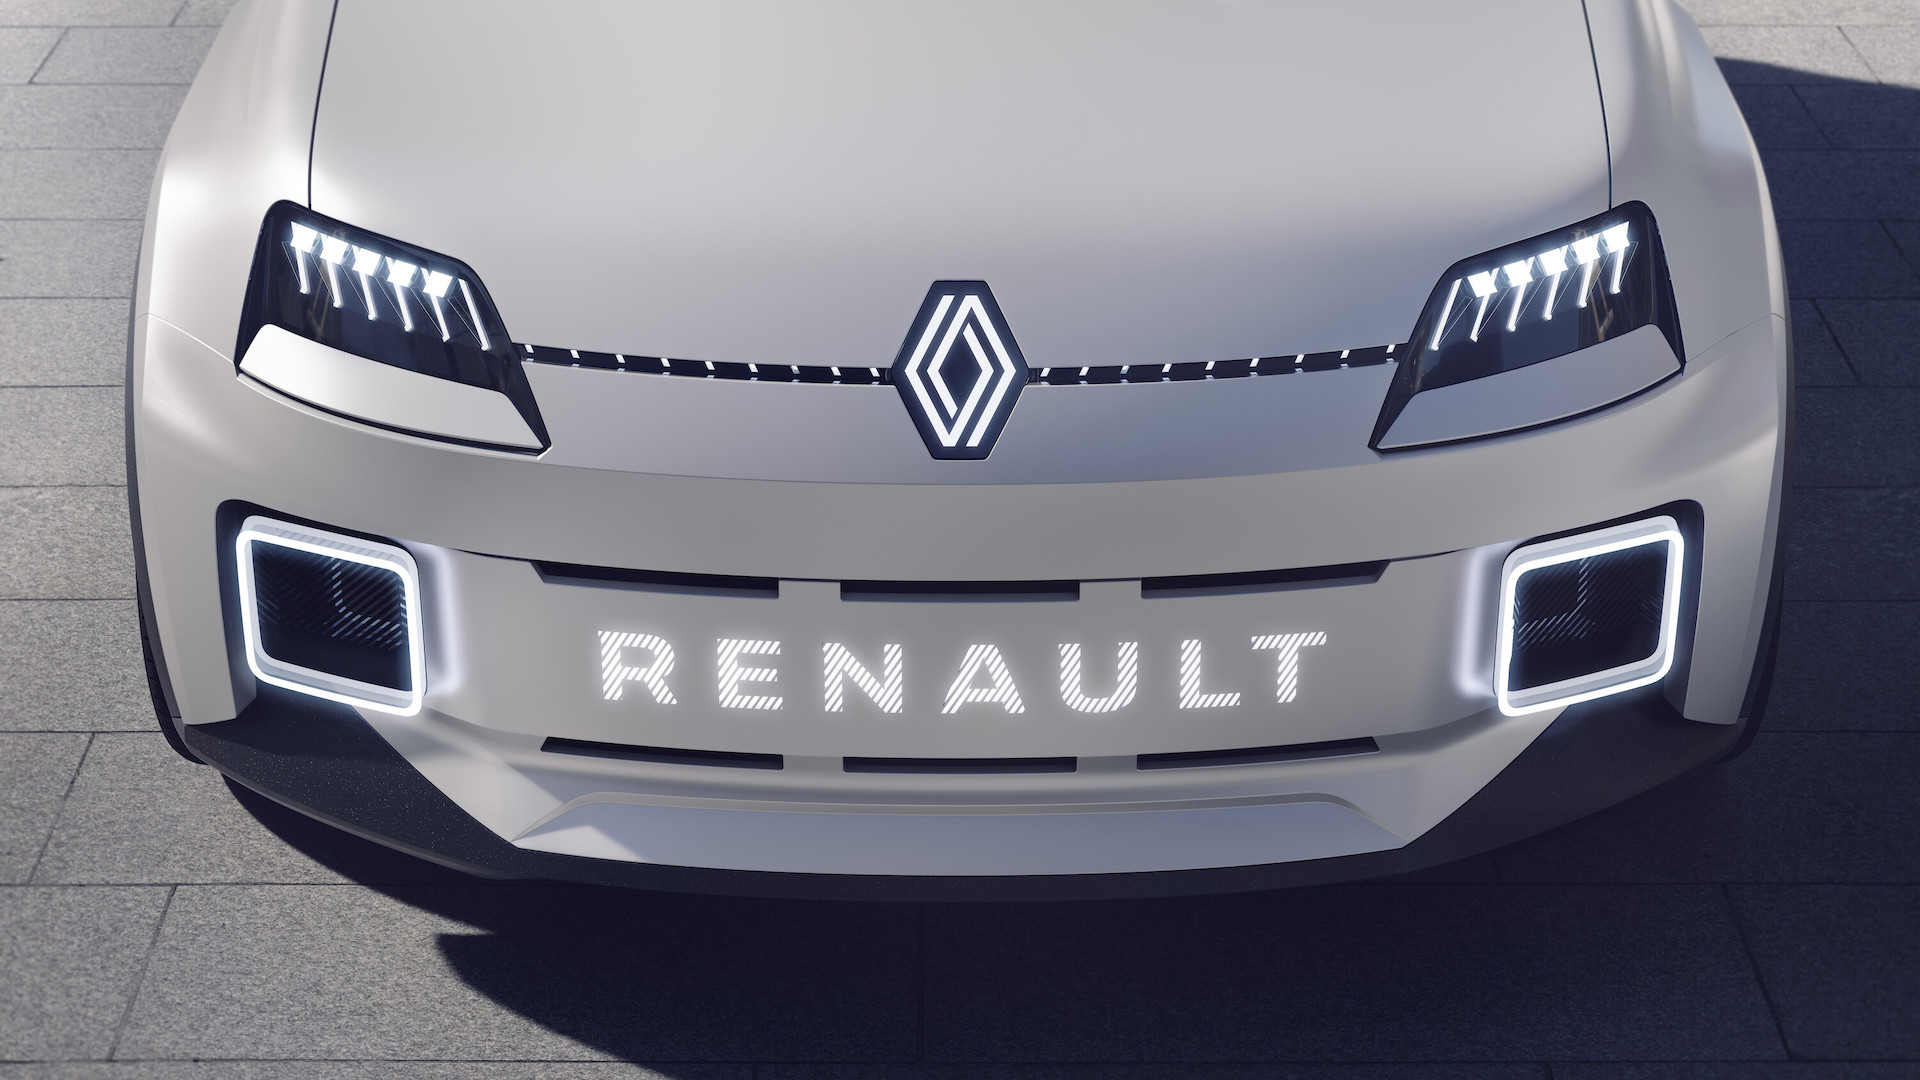 Renault R5 électrique // Source : Renault